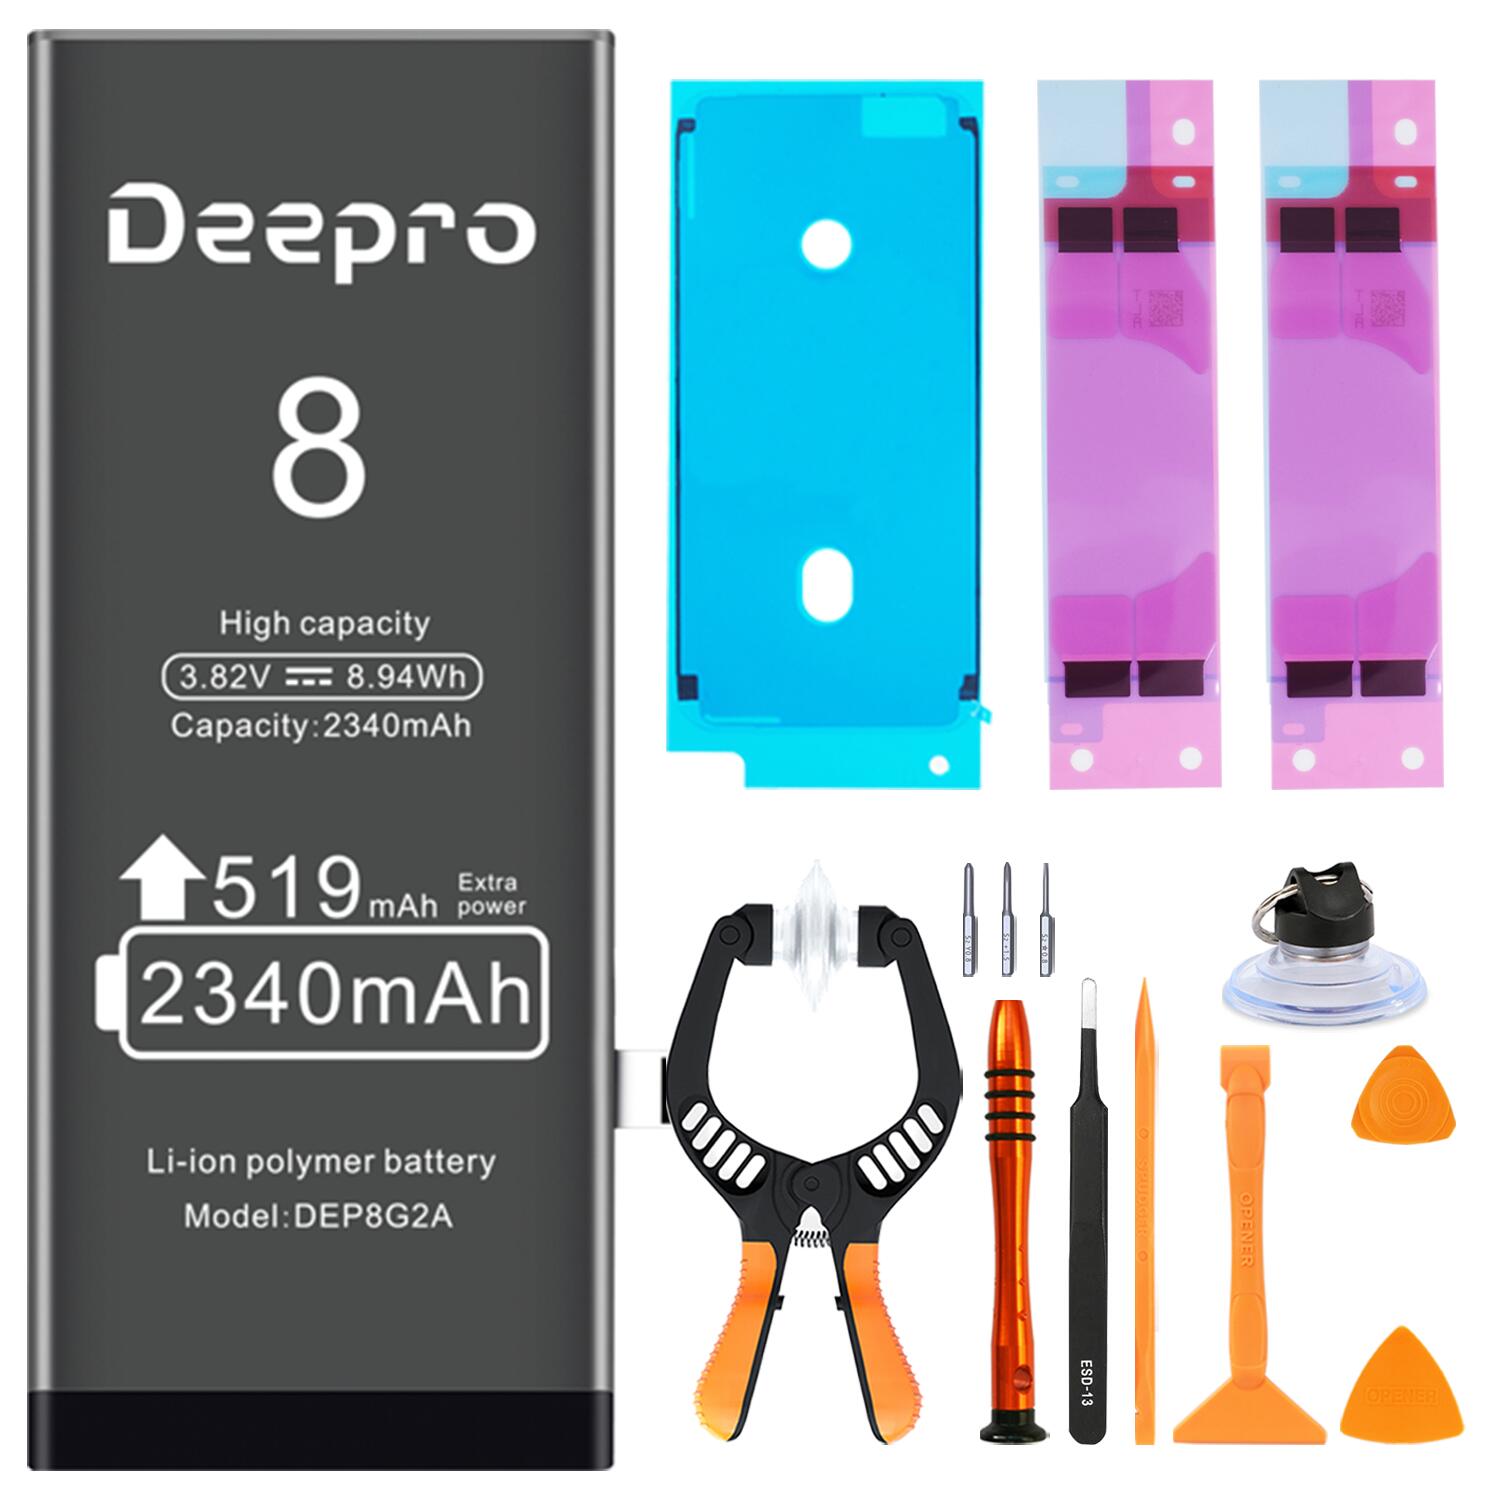 Deepro iPhone8 バッテリー 交換用キット 大容量バッテリー 2340mAh 3.82V PSE認証済 2年保証 説明書 工具付